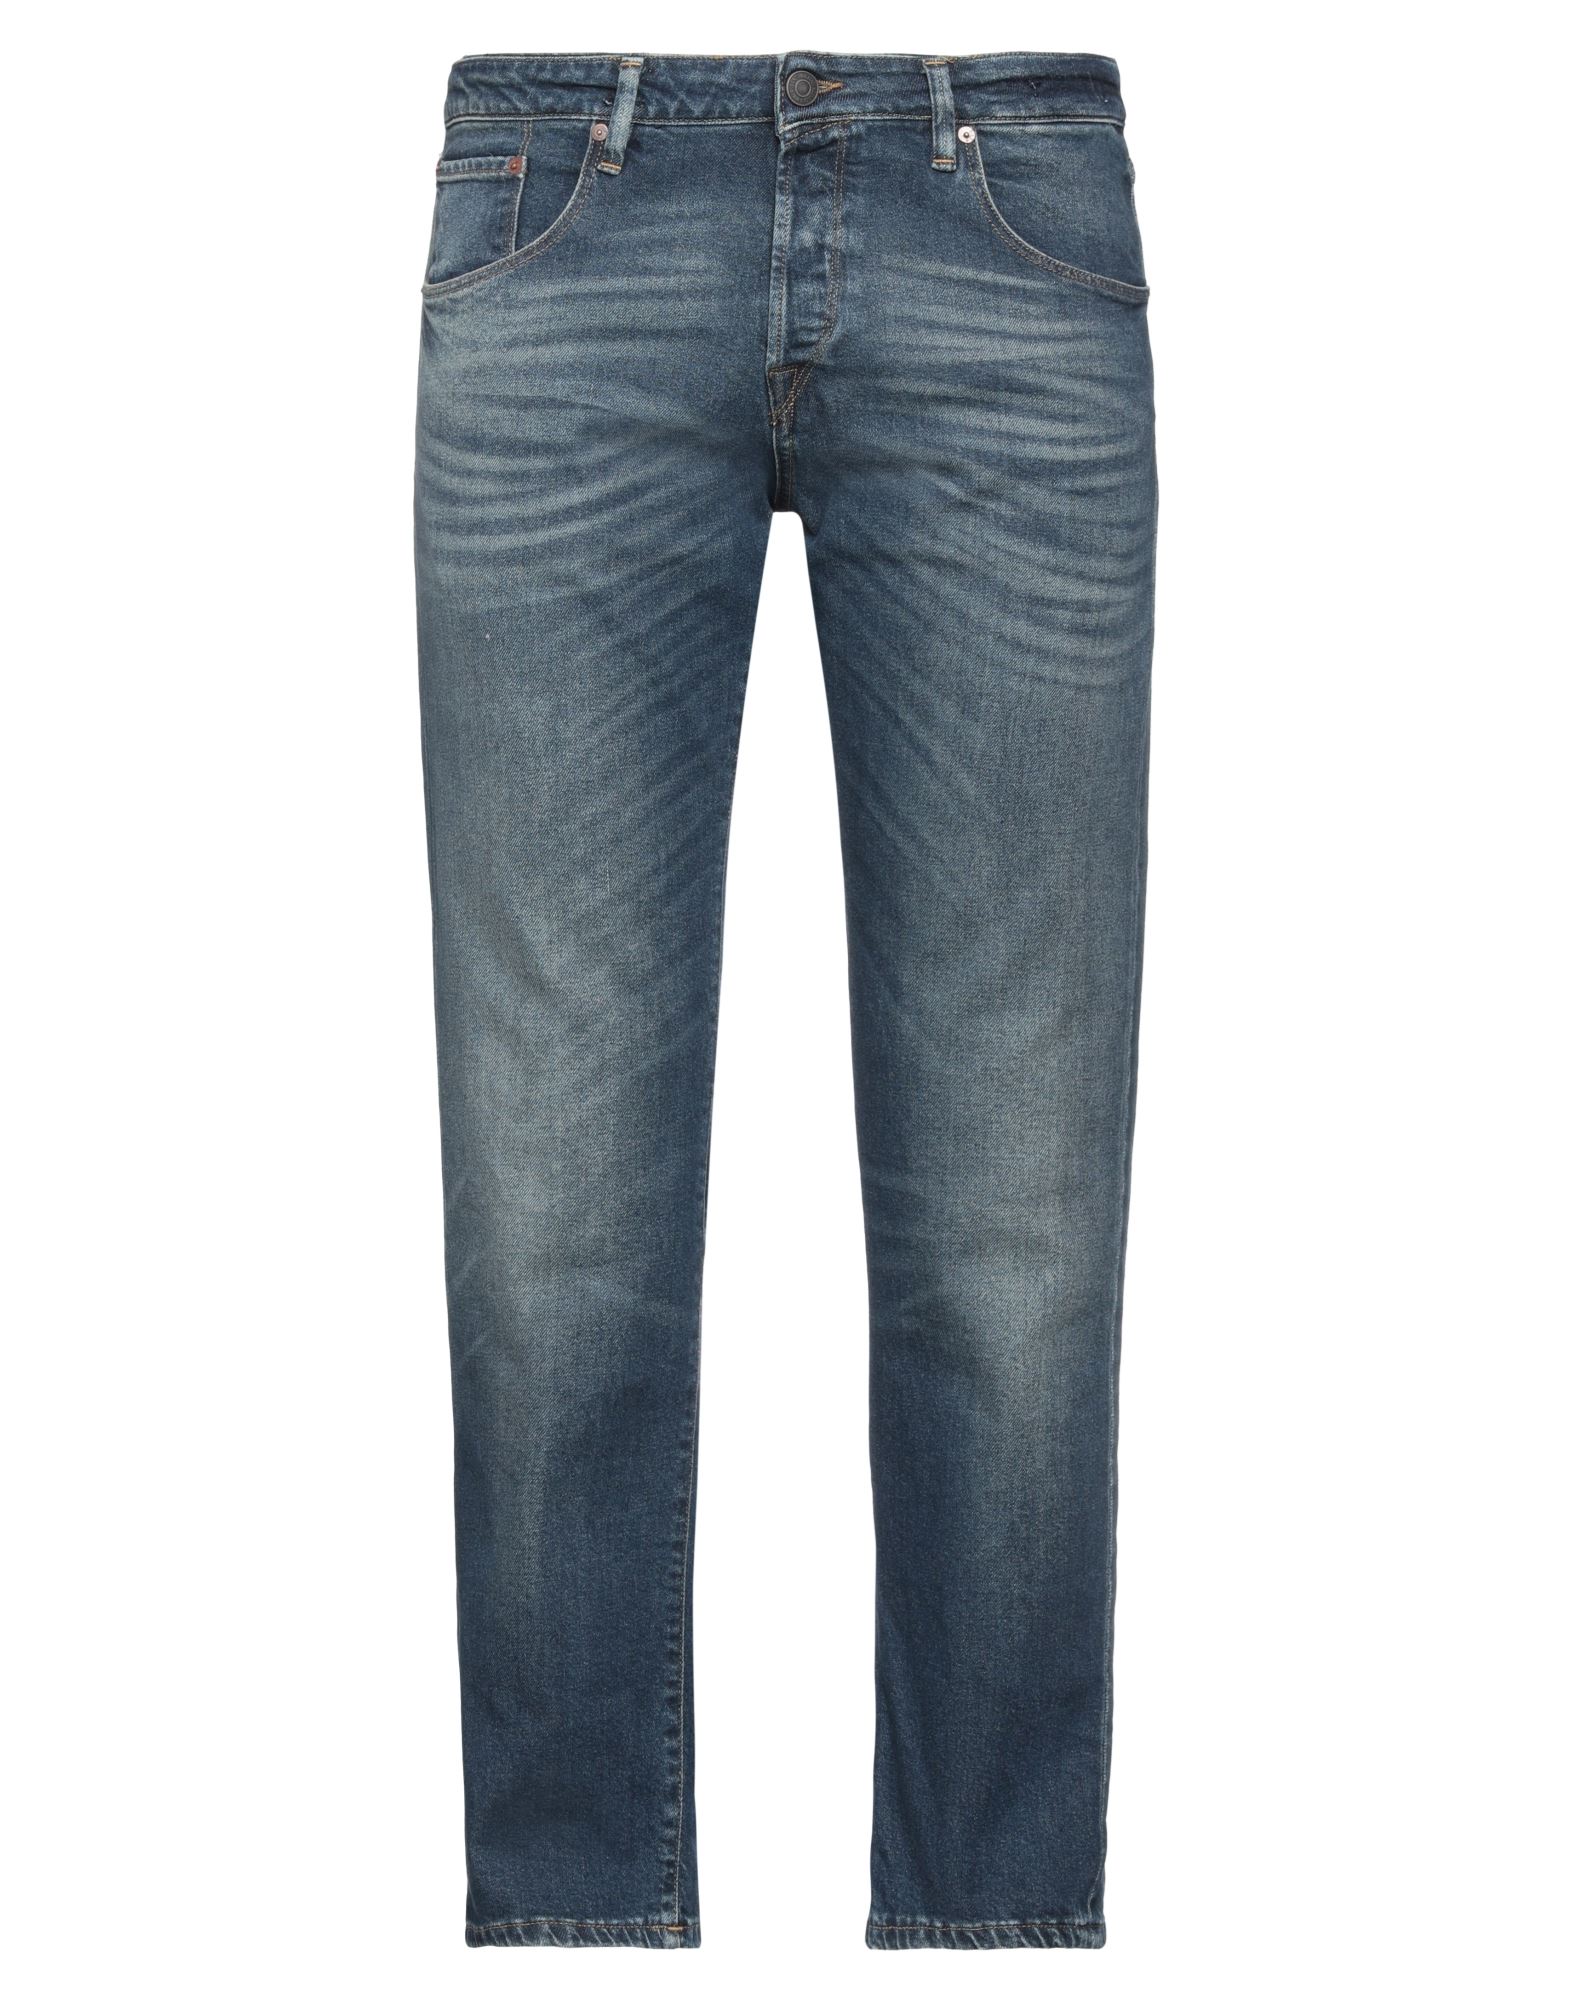 Jack & Jones Man Jeans Blue Size 33w-32l Cotton, Elastane